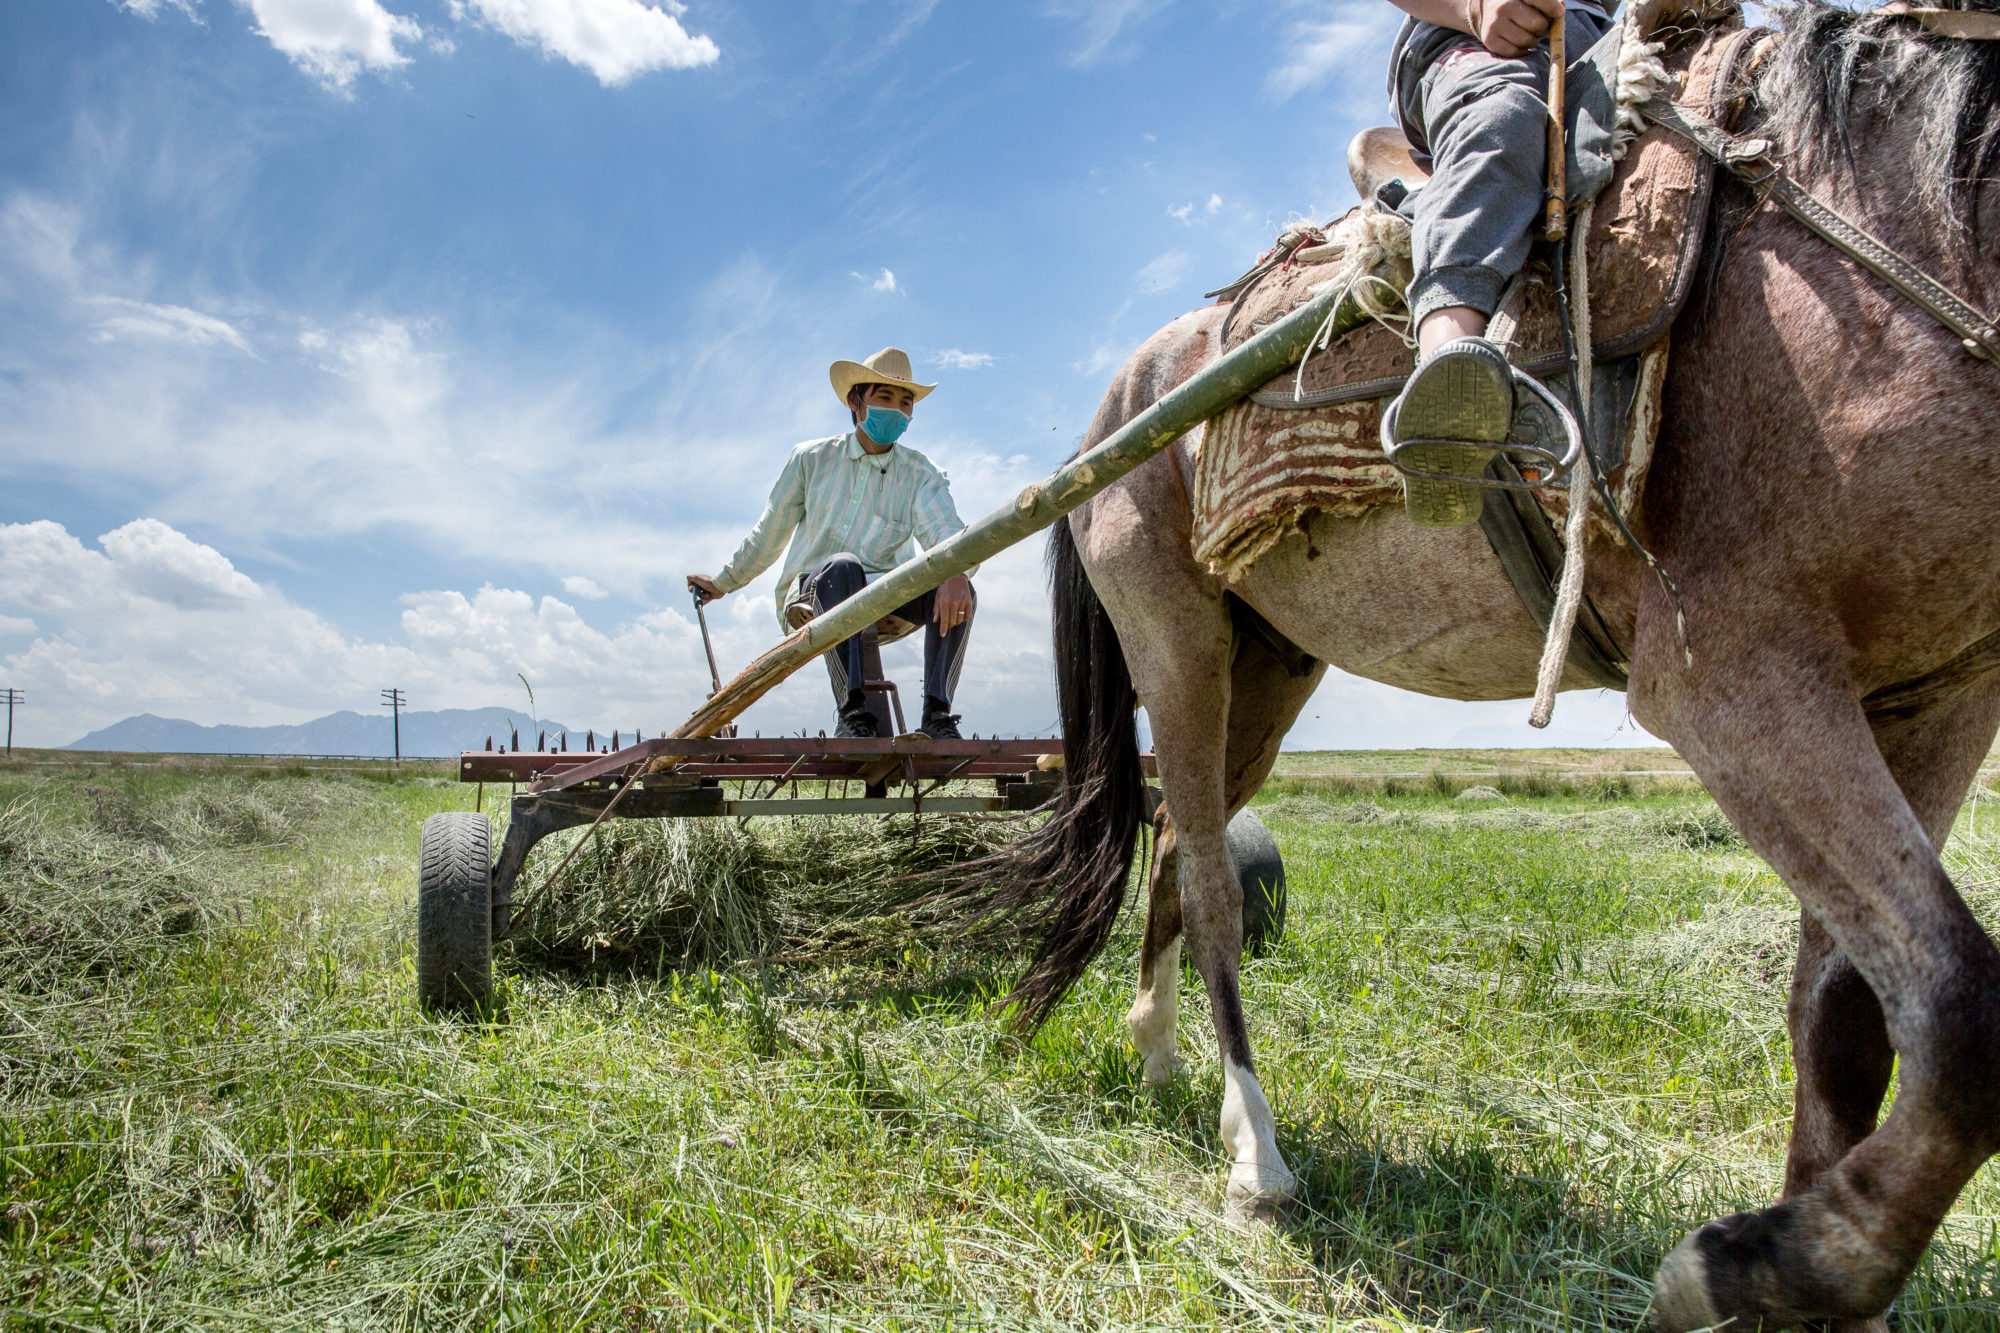 Foto di kighizistan, un agricoltore raccoglie l’erba con uno strumento primitivo tirato dal cavallo